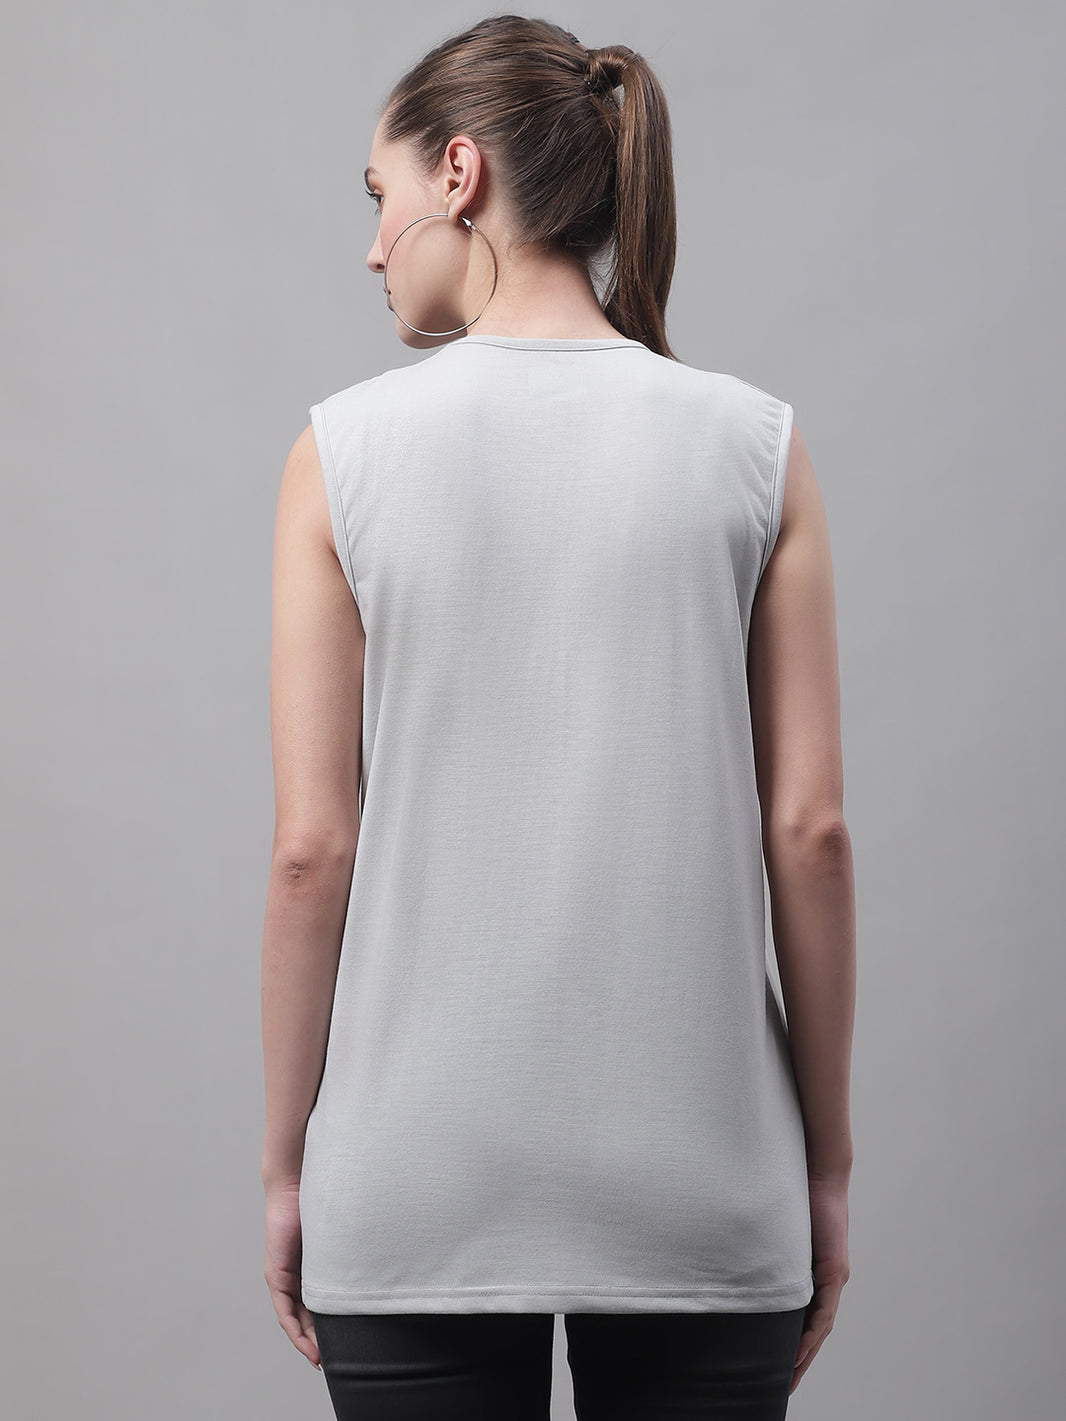 Vimal Jonney Regular Fit Cotton Solid Light Grey Gym Vest for Women